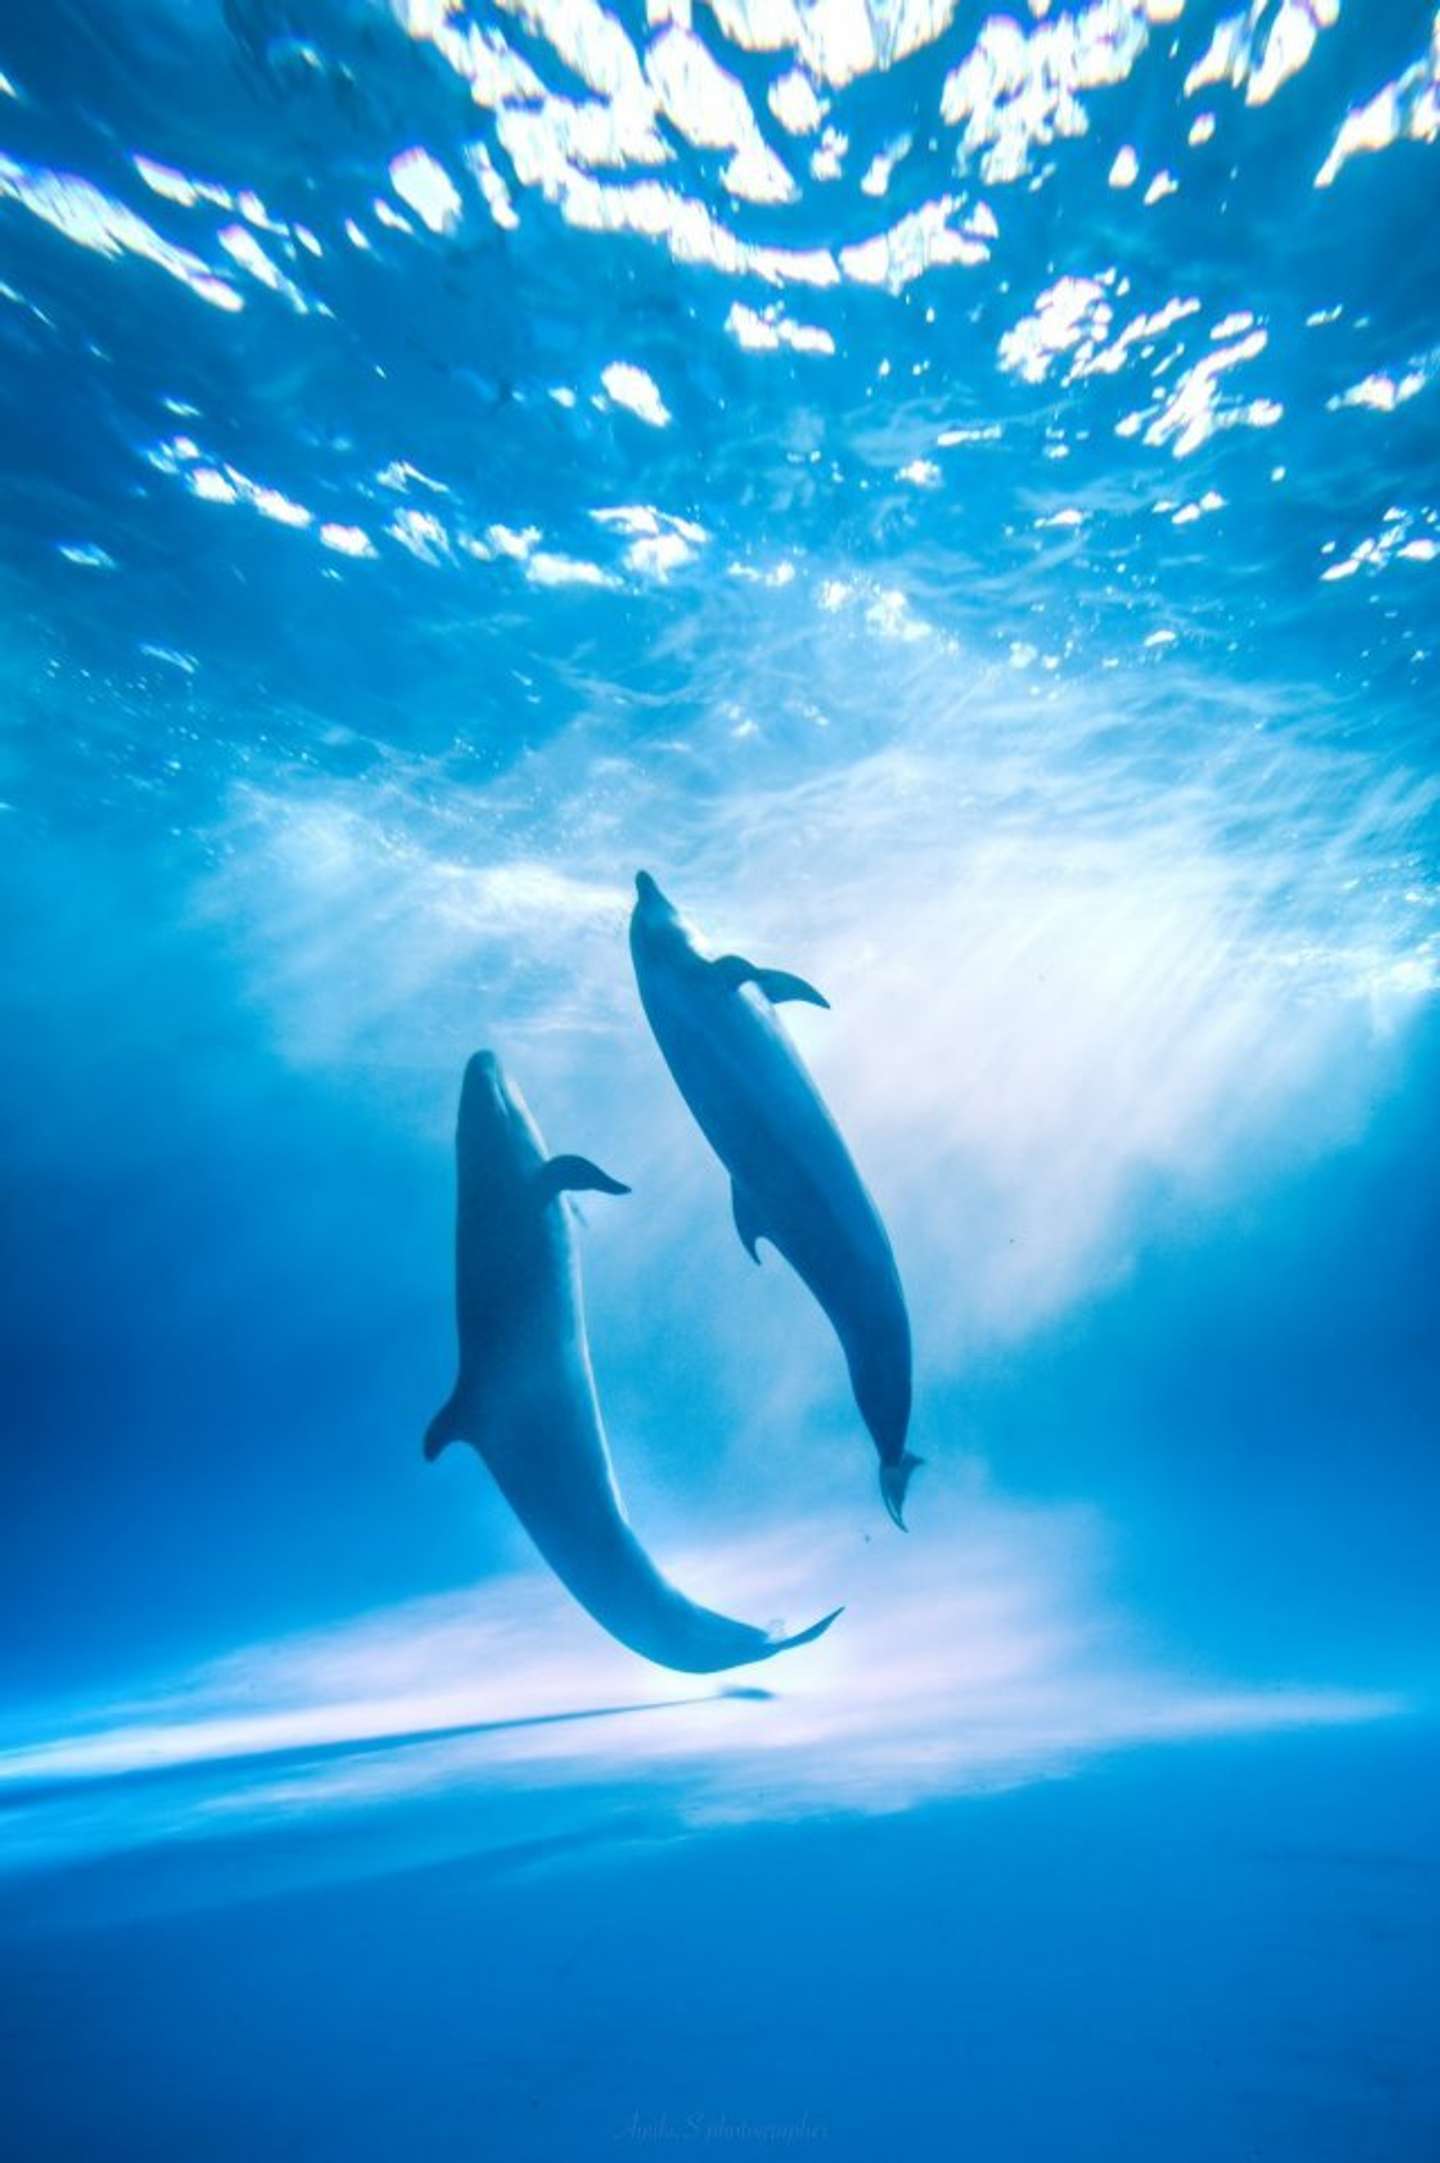 ラッセンの絵を見ているよう... 幻想的に水中で舞う「海の踊り子」たちの圧倒的な美しさ (2022年1月2日) - エキサイトニュース